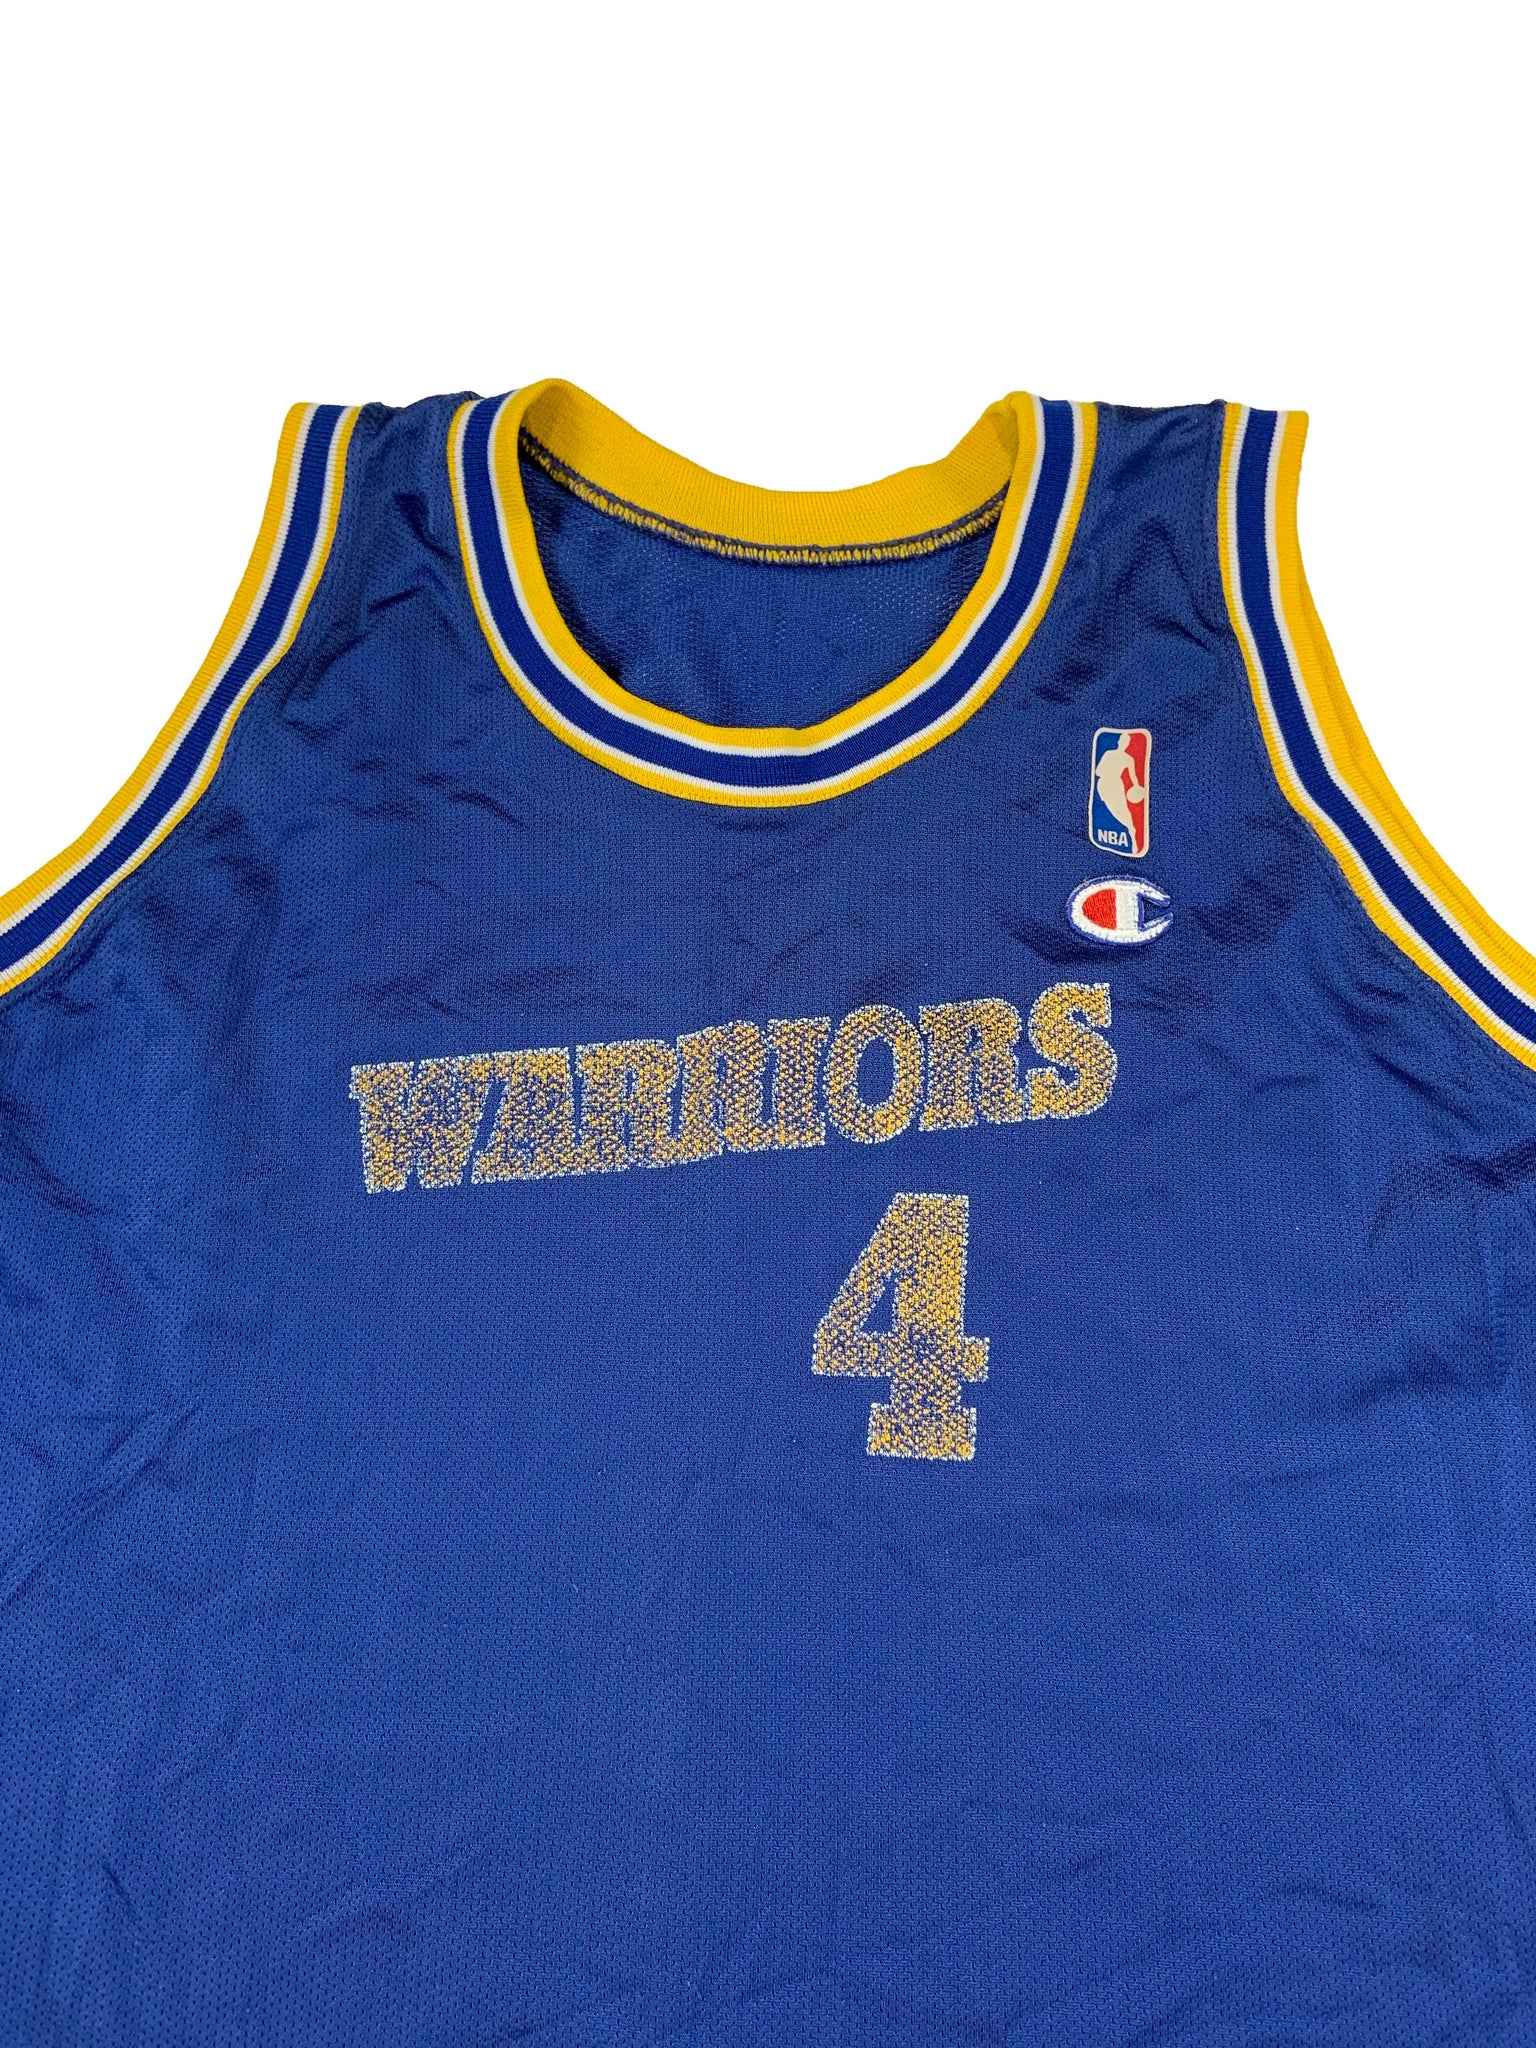 Vtg 90s Champion Golden State Warriors 4 Chris Webber NBA 